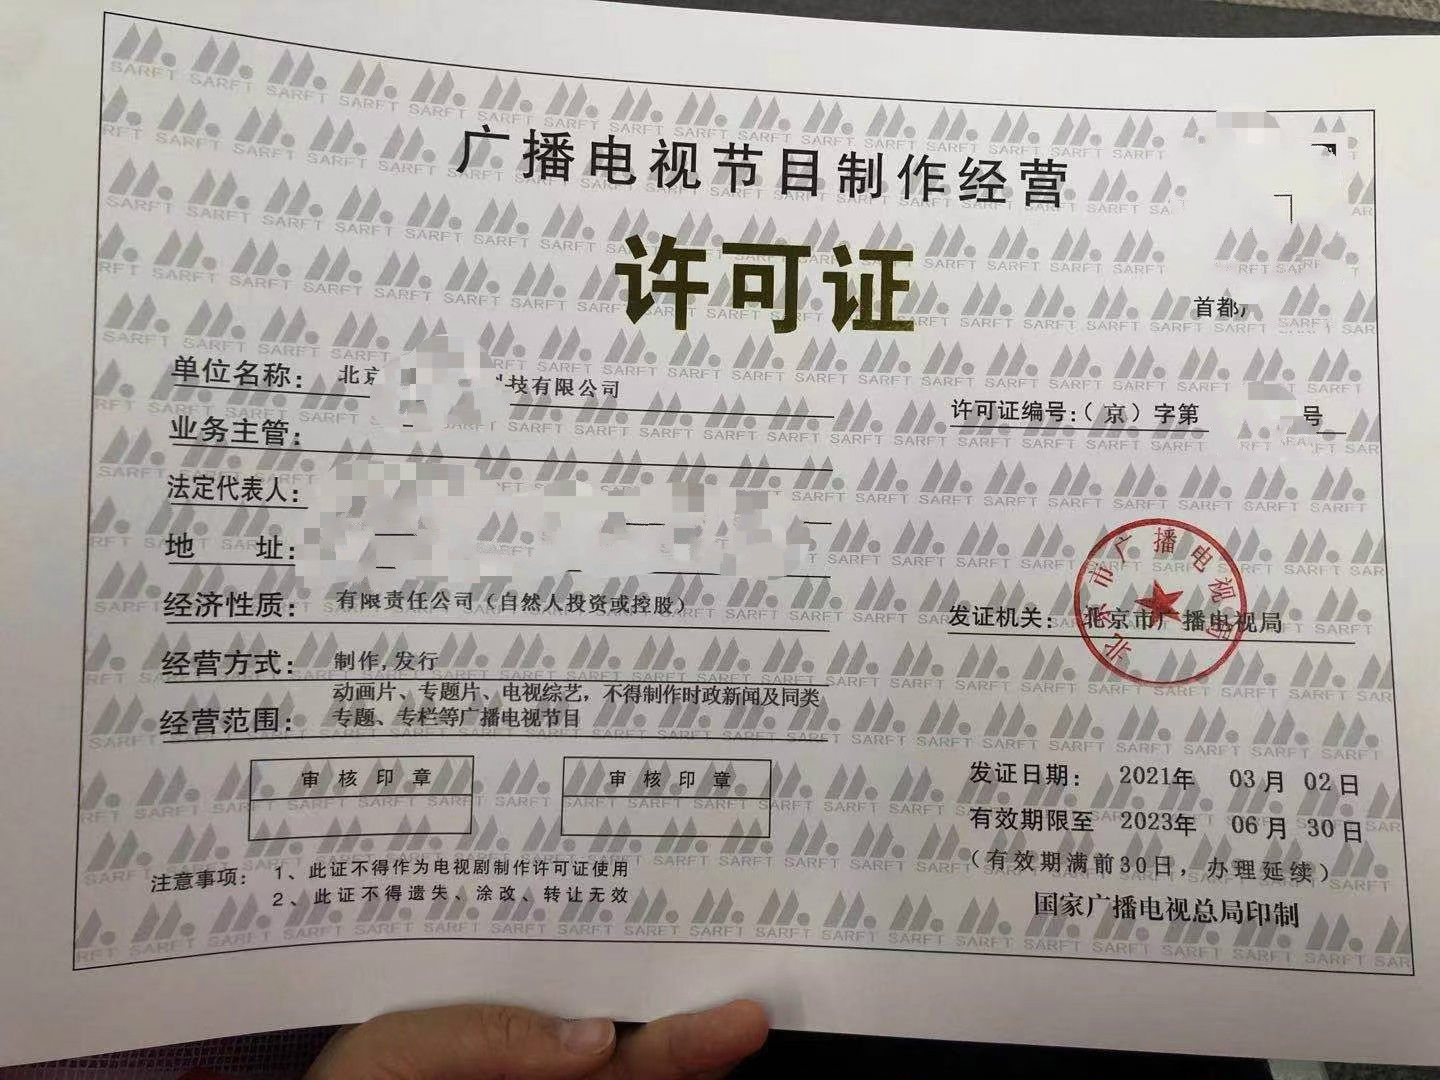 以下材料是针对于北京市大兴区广播电视节目制作许可证